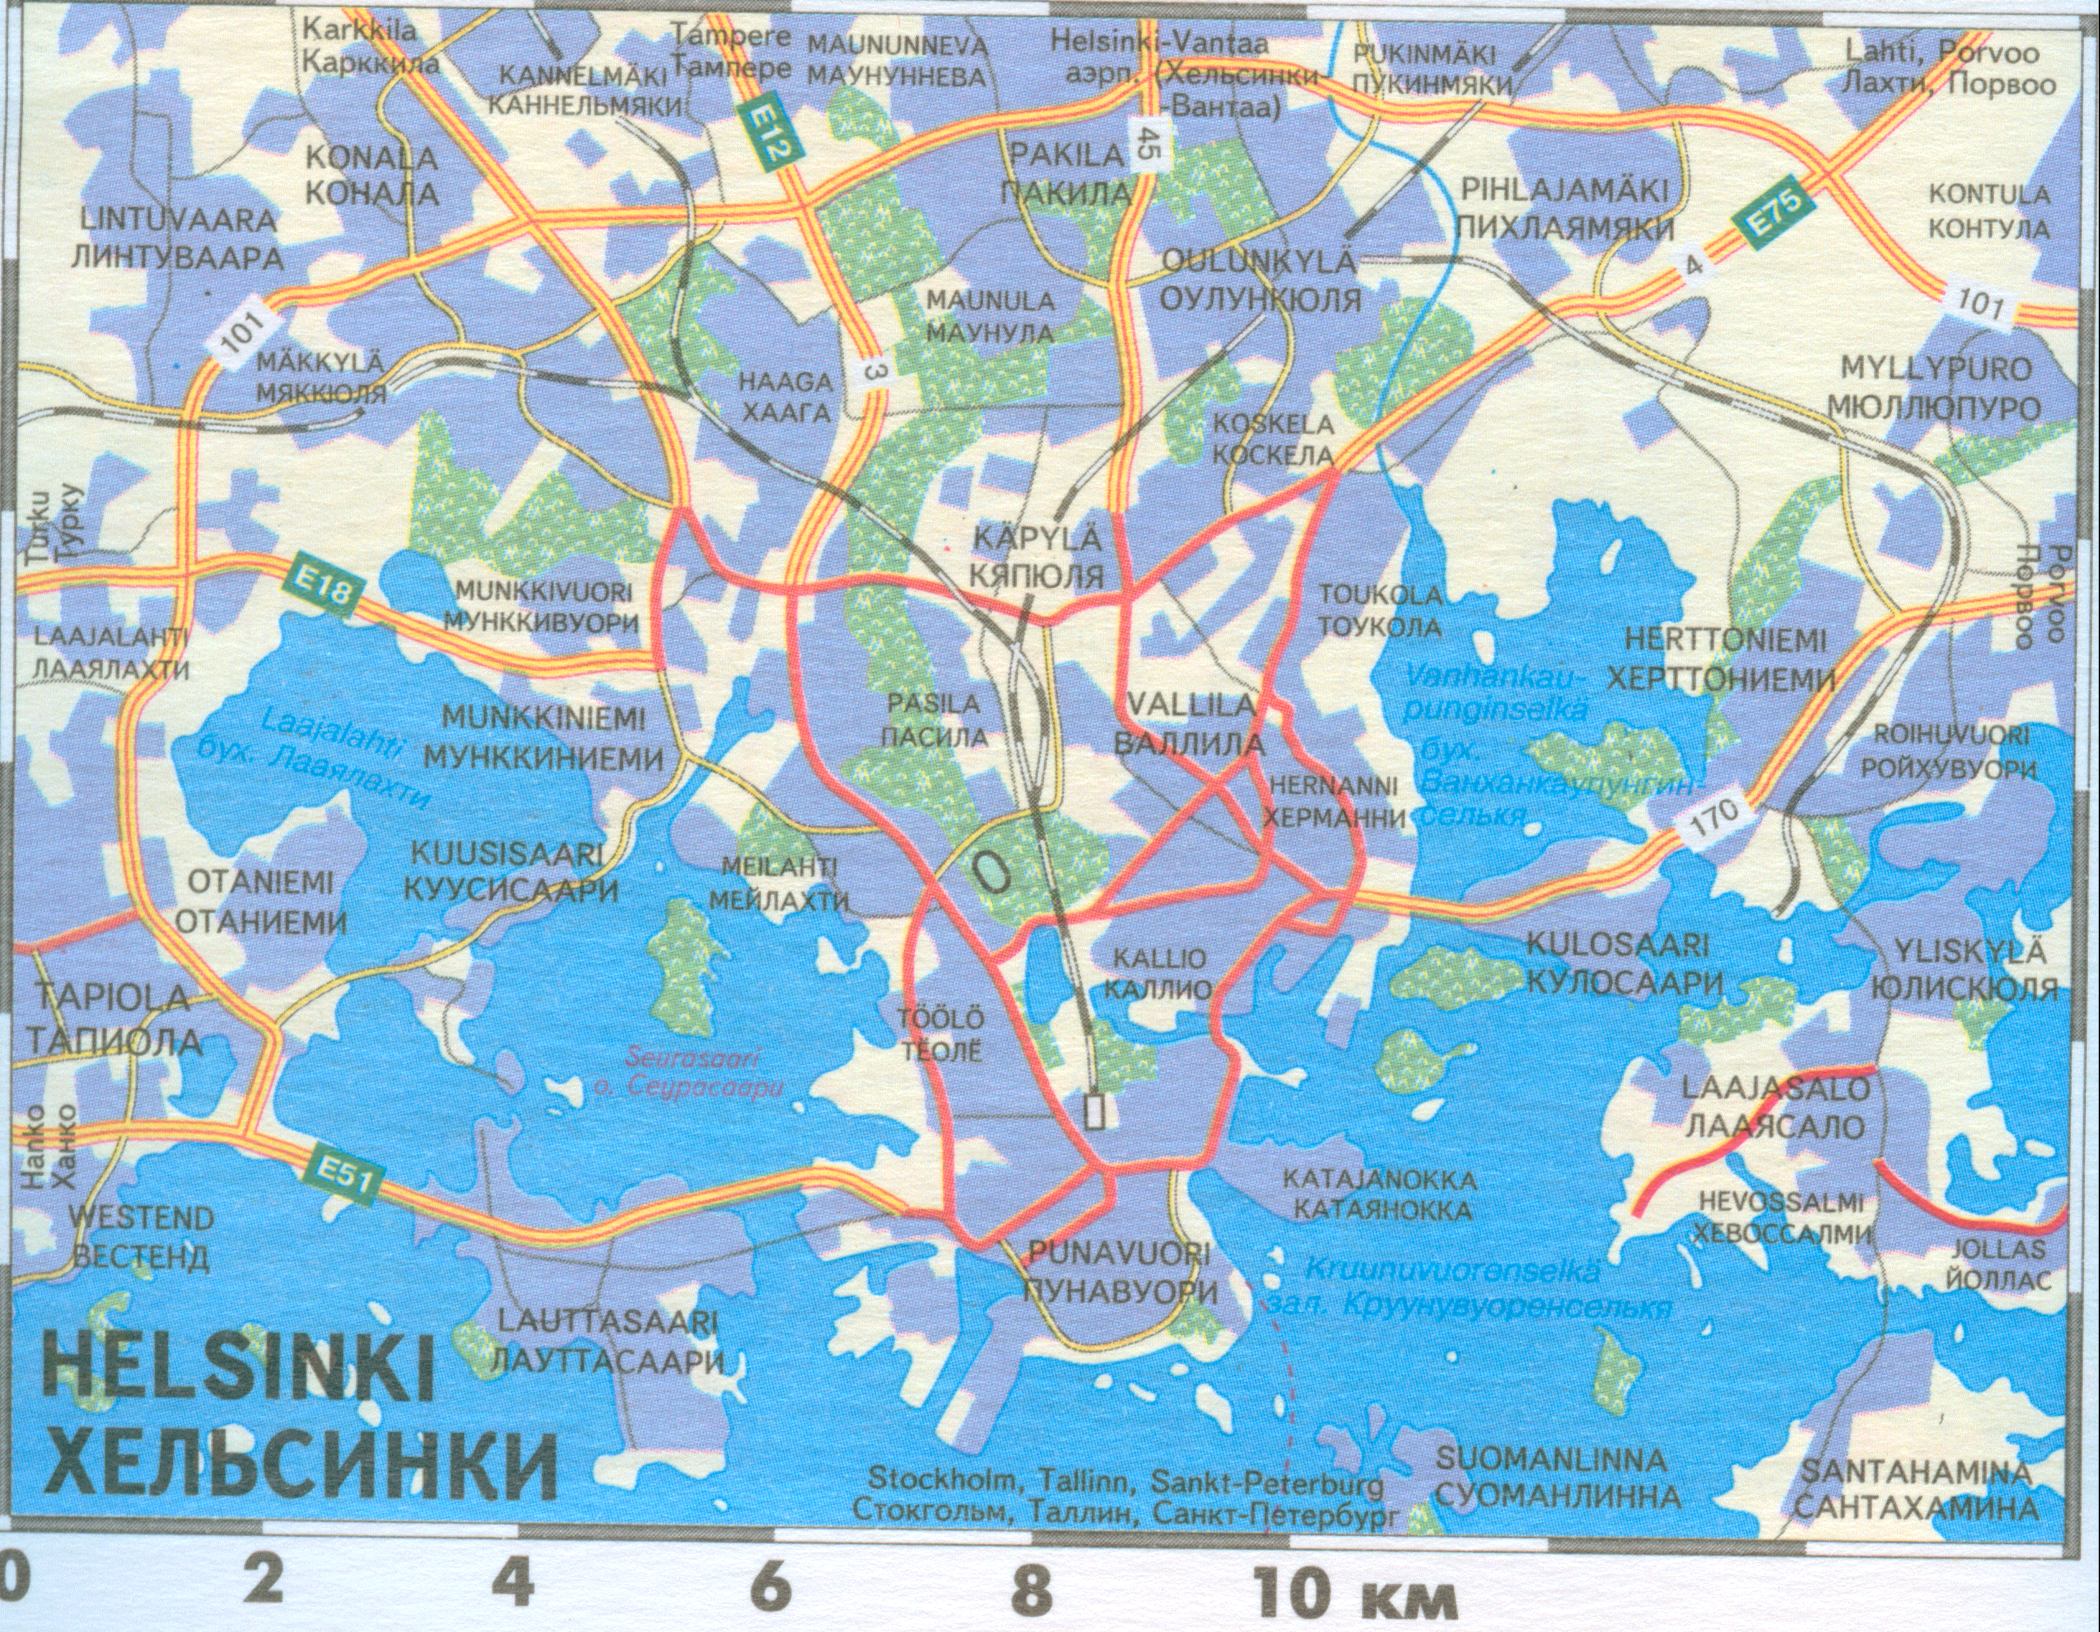 Финляндия, автомобильная карта Хельсинки. Карта автомобильных дорог Хельсинки, транспортный план города Хельсинки - скоростные трассы, железные дороги, A0 - 